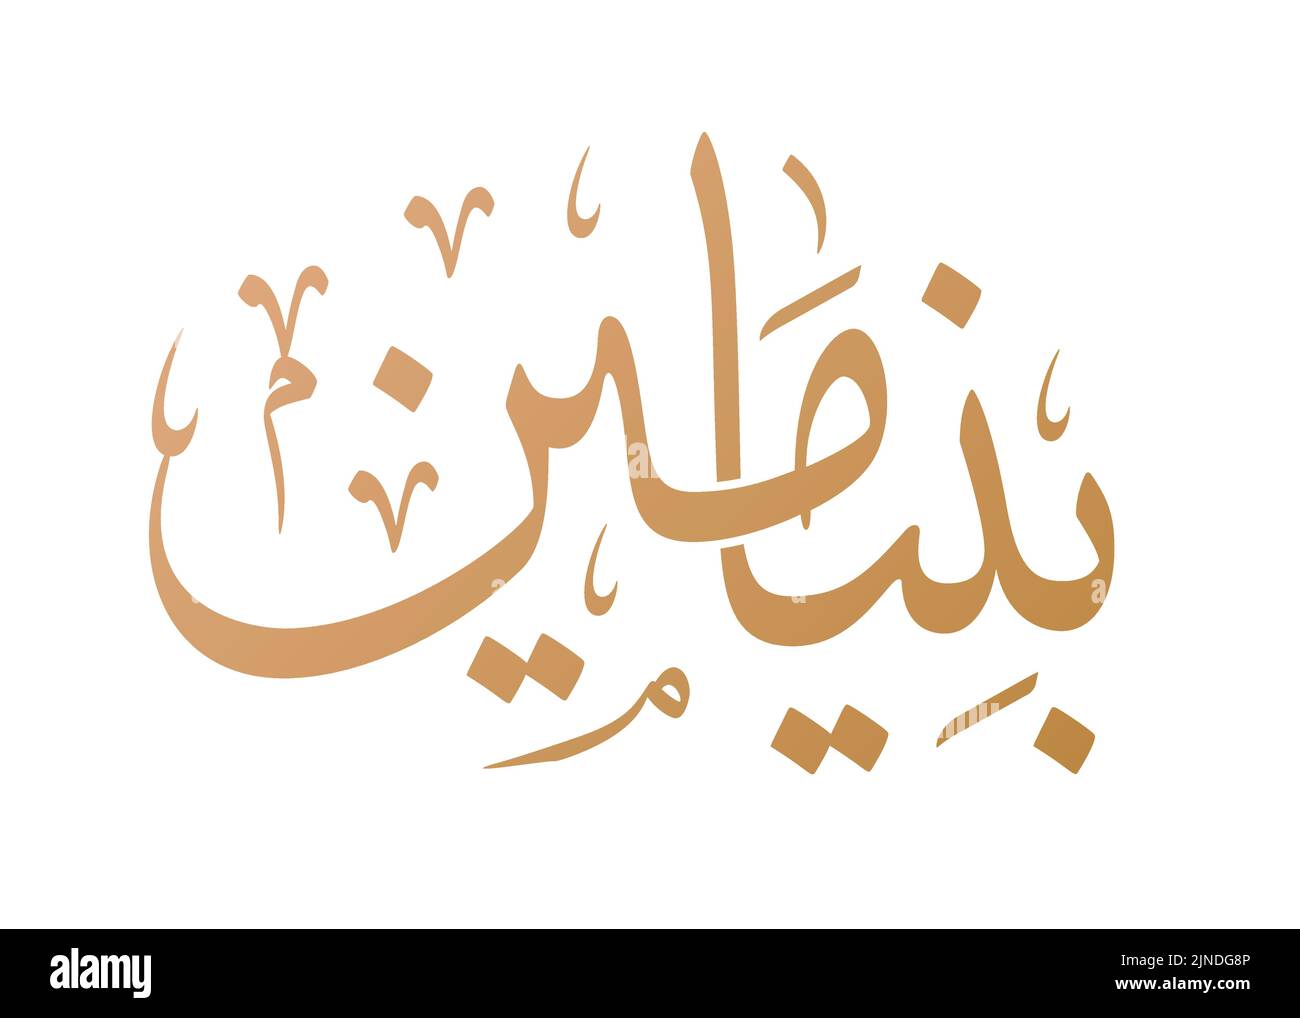 Benjamin nom calligraphie arabe dans le vecteur de script Thuluth. Convient pour collier, tatouage, etc. Traduction: 'Benjamin' Illustration de Vecteur